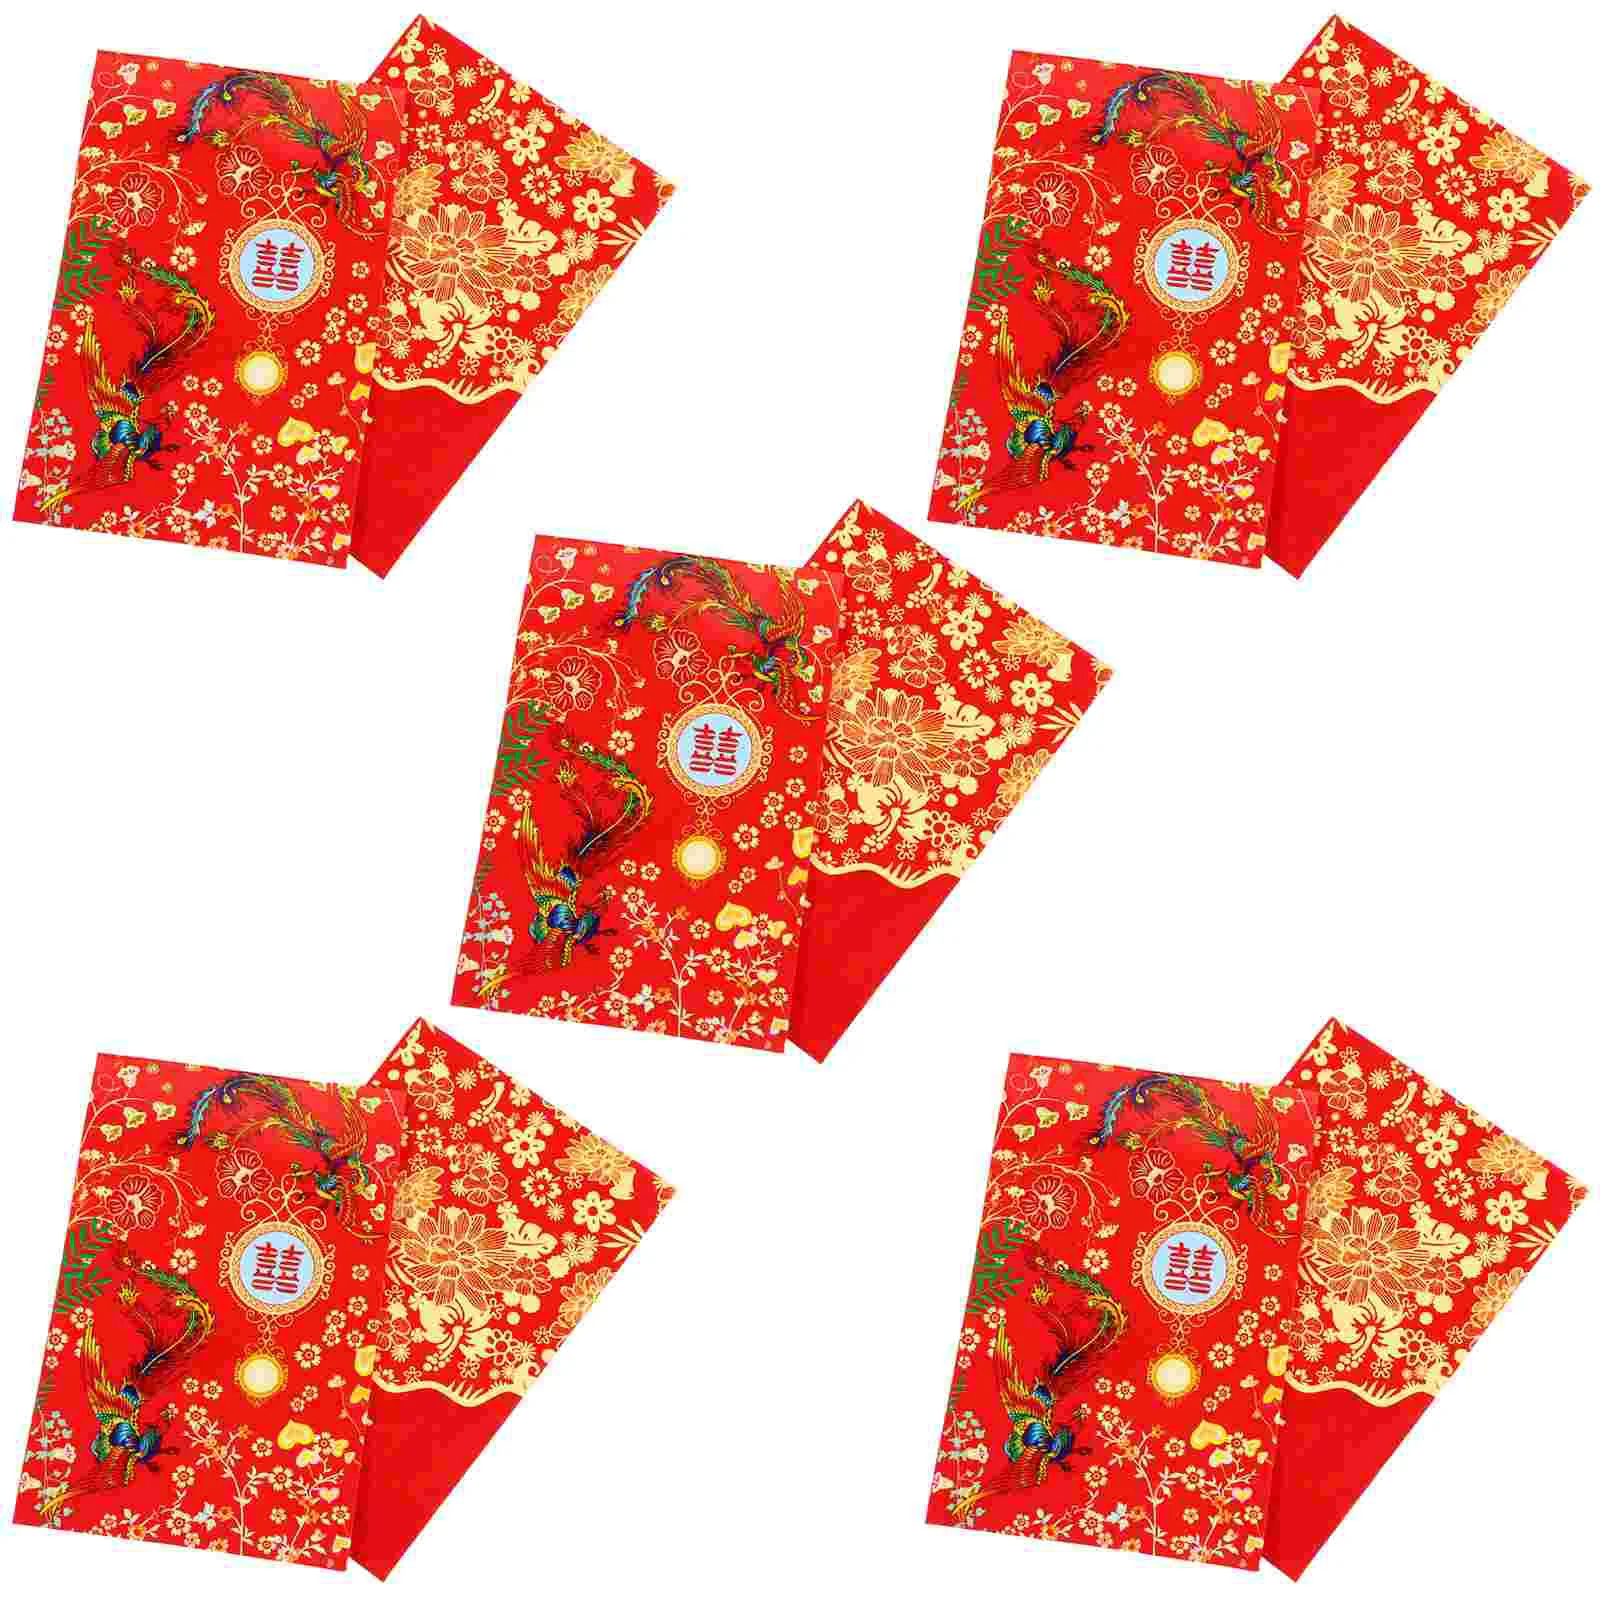 

Красные свадебные конверты для денег, китайские пакеты, конверты, наличные, подарочные пакеты Bao Hong Hongbao, карманные новогодние праздничные мини-конверты для невесты